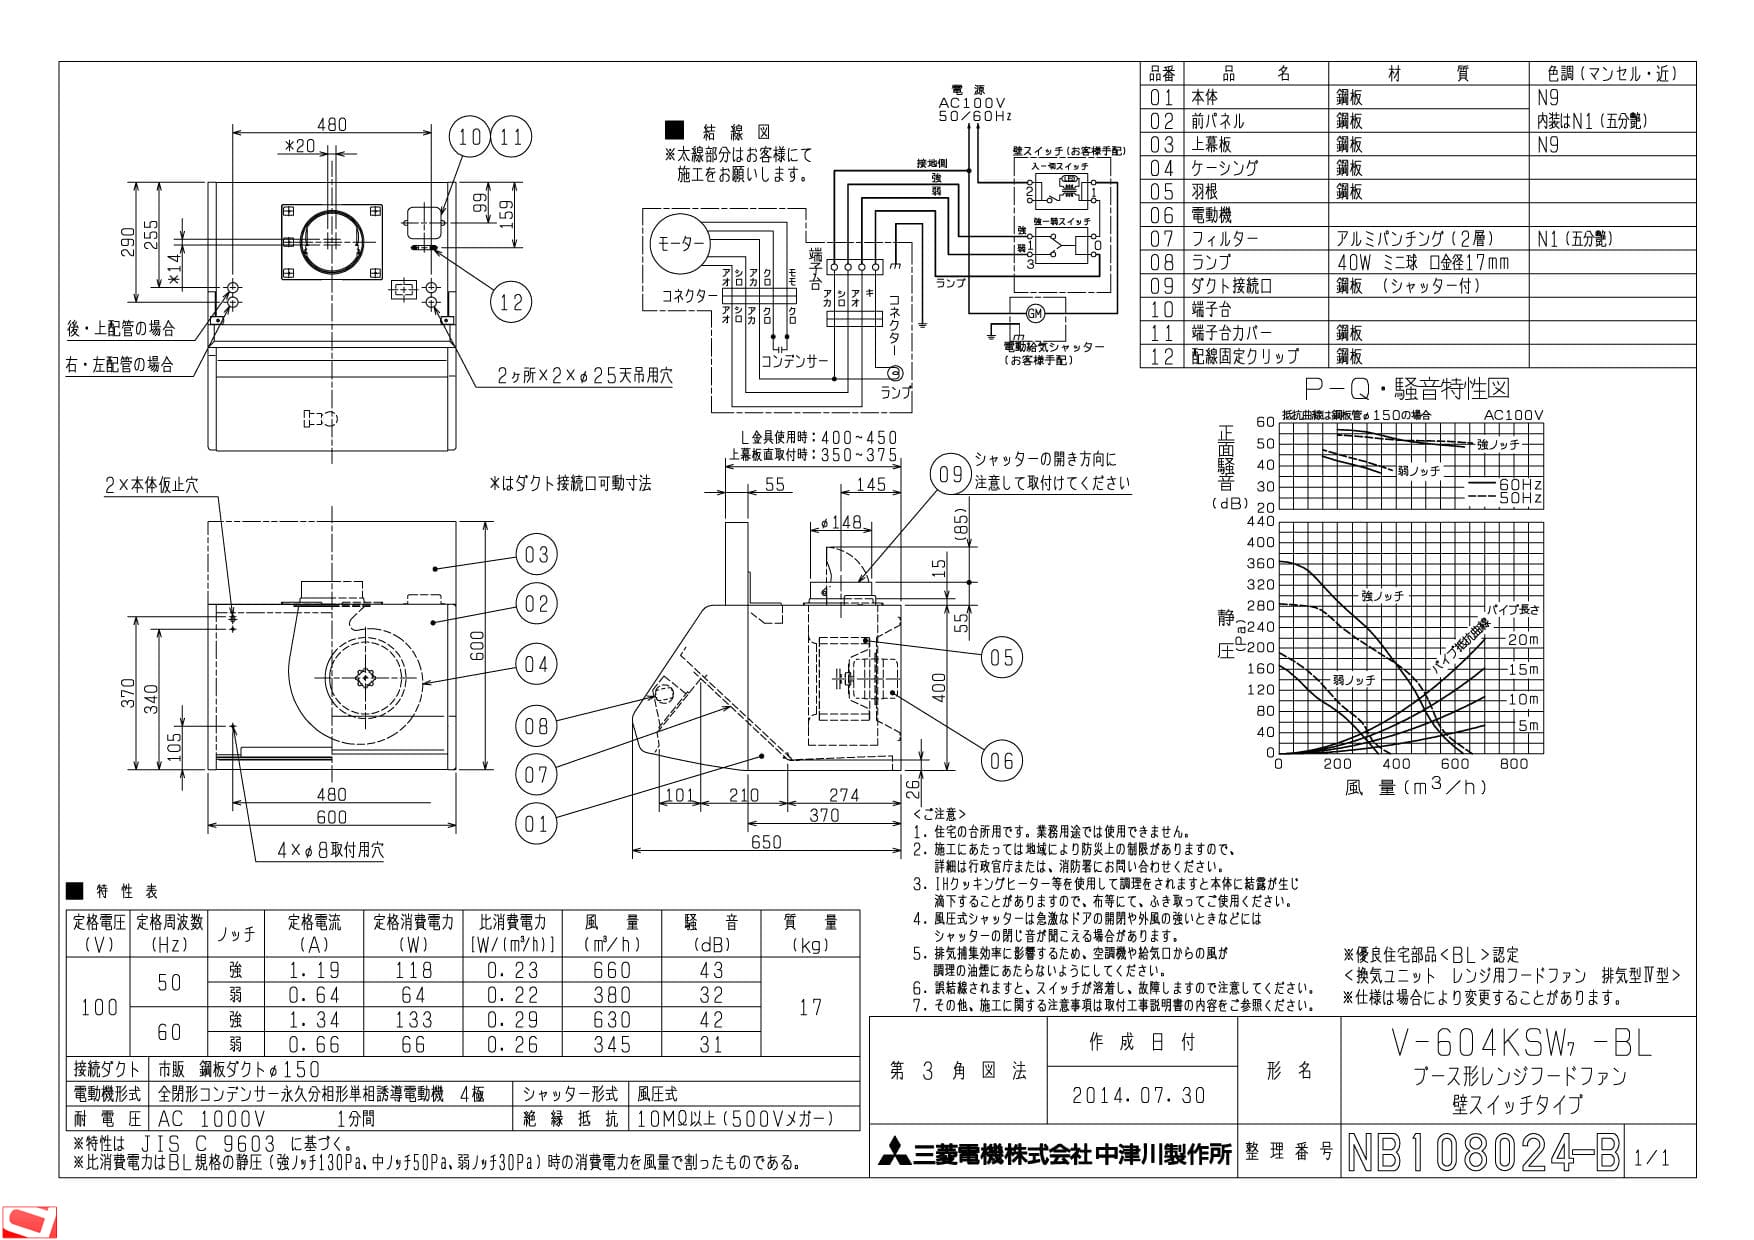 三菱電機 V-604KSW7-BL納入仕様図 | 通販 プロストア ダイレクト